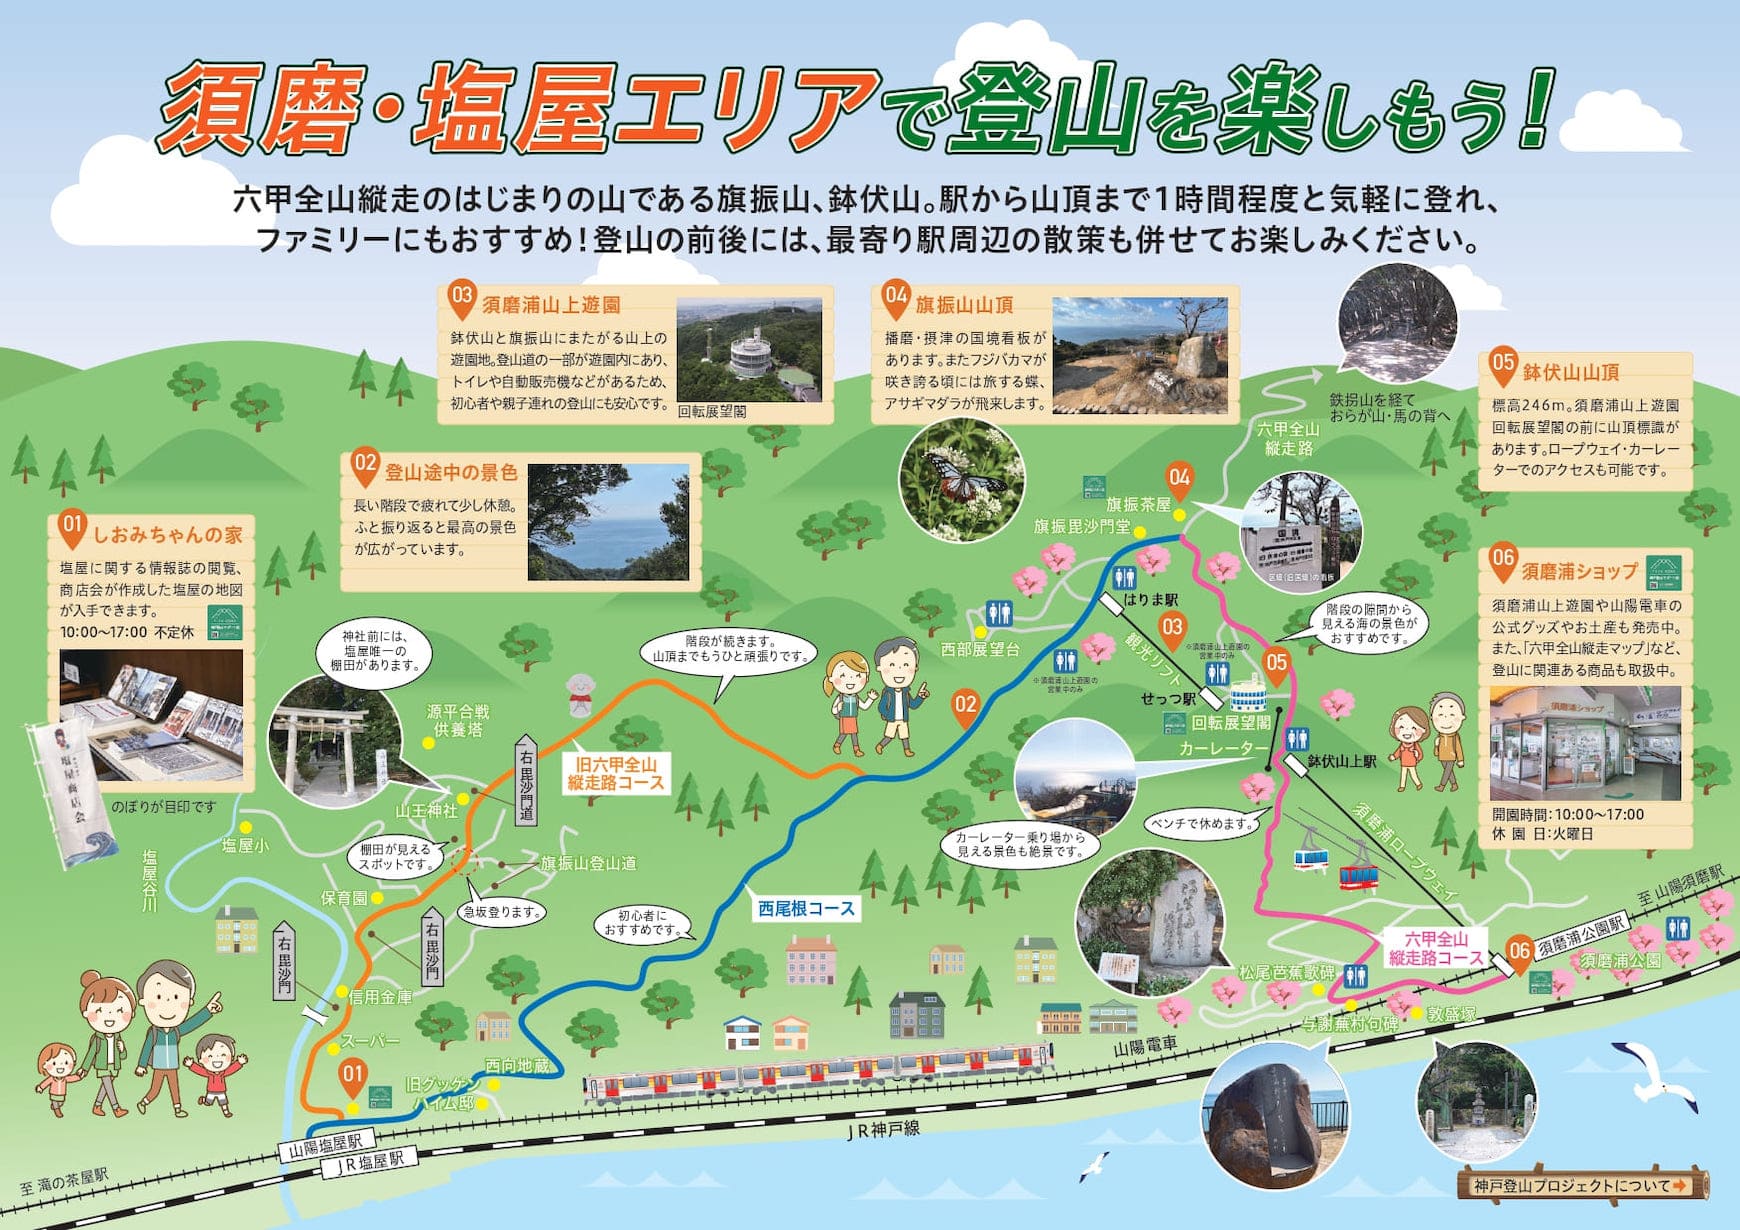 須磨・塩屋エリアの登山マップ